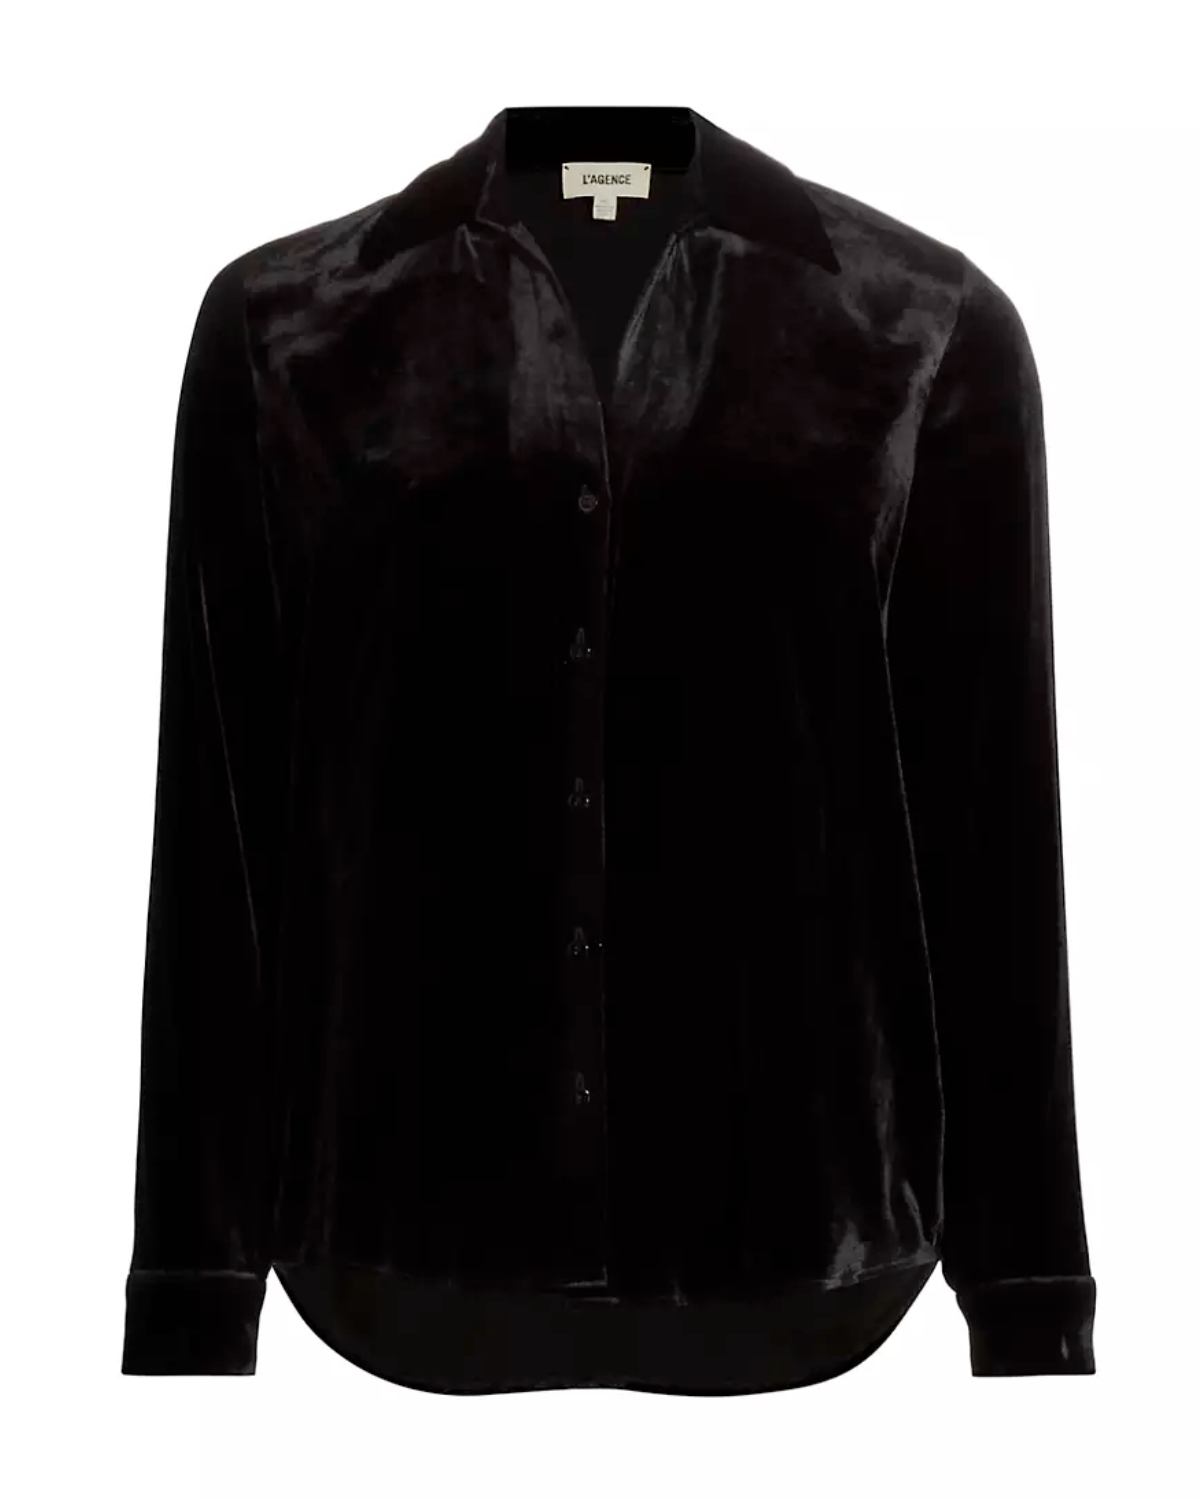 Argo Shirt (Black Velvet)